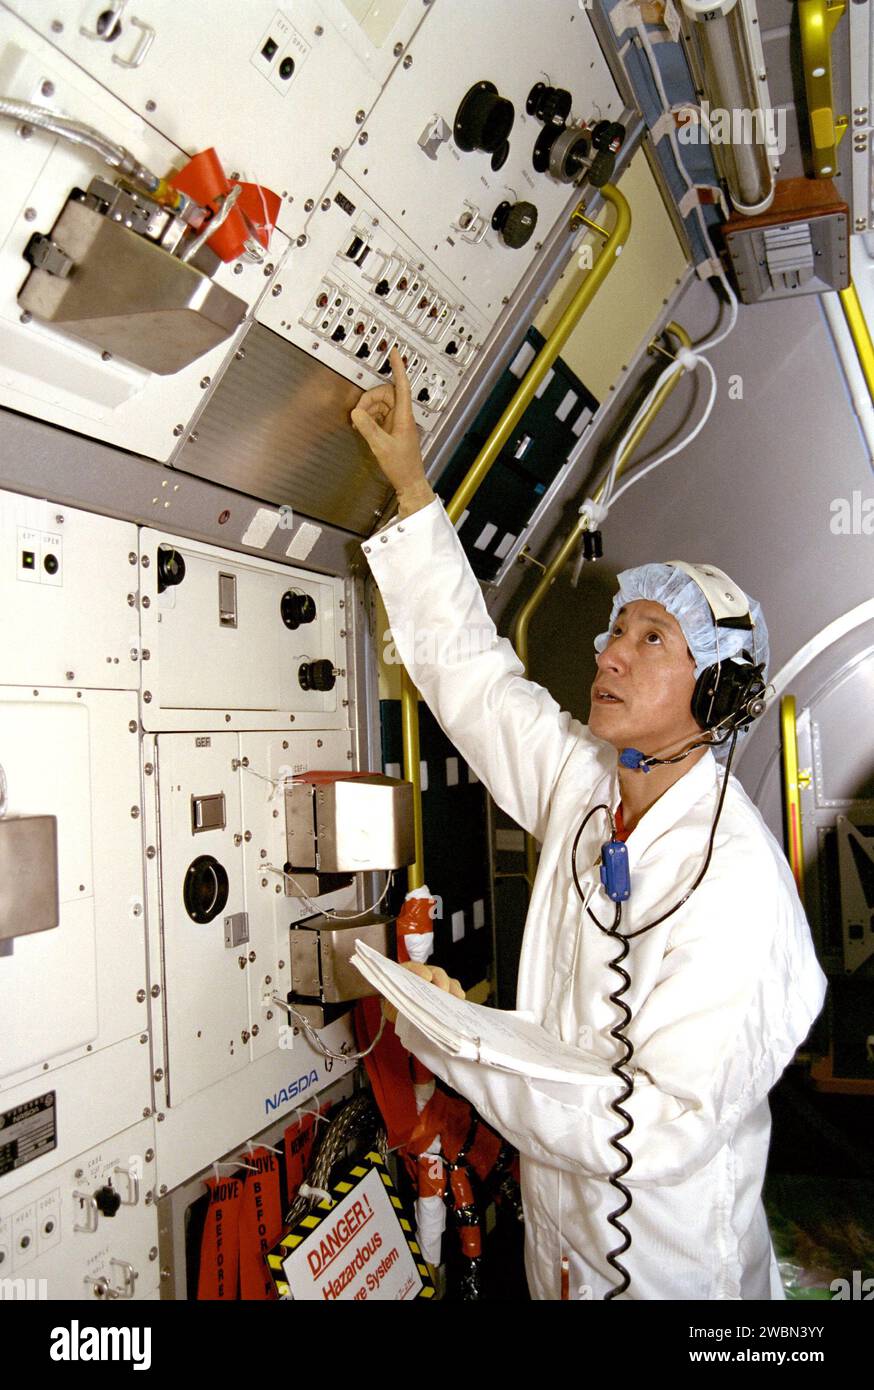 KENNEDY SPACE CENTER, FLA. -- nell'edificio Operations and Checkout, lo specialista di payload STS-47, il dottor Mamoru Mohri, sta partecipando a un test di sequenza missione dello Spacelab-J (SL-J). Inoltre, per il test delle attività pianificate in orbita erano disponibili il Comandante del carico utile Mark Lee e altri membri del team del carico utile. Spacelab-J è uno sforzo congiunto tra l'agenzia spaziale giapponese NASDA e la NASA, e dispone di una serie di 44 ricerche di scienze della vita e di elaborazione dei materiali. Il dottor Mohri, uno specialista di carichi utili, diventerà il primo giapponese a volare sullo Shuttle. Foto Stock